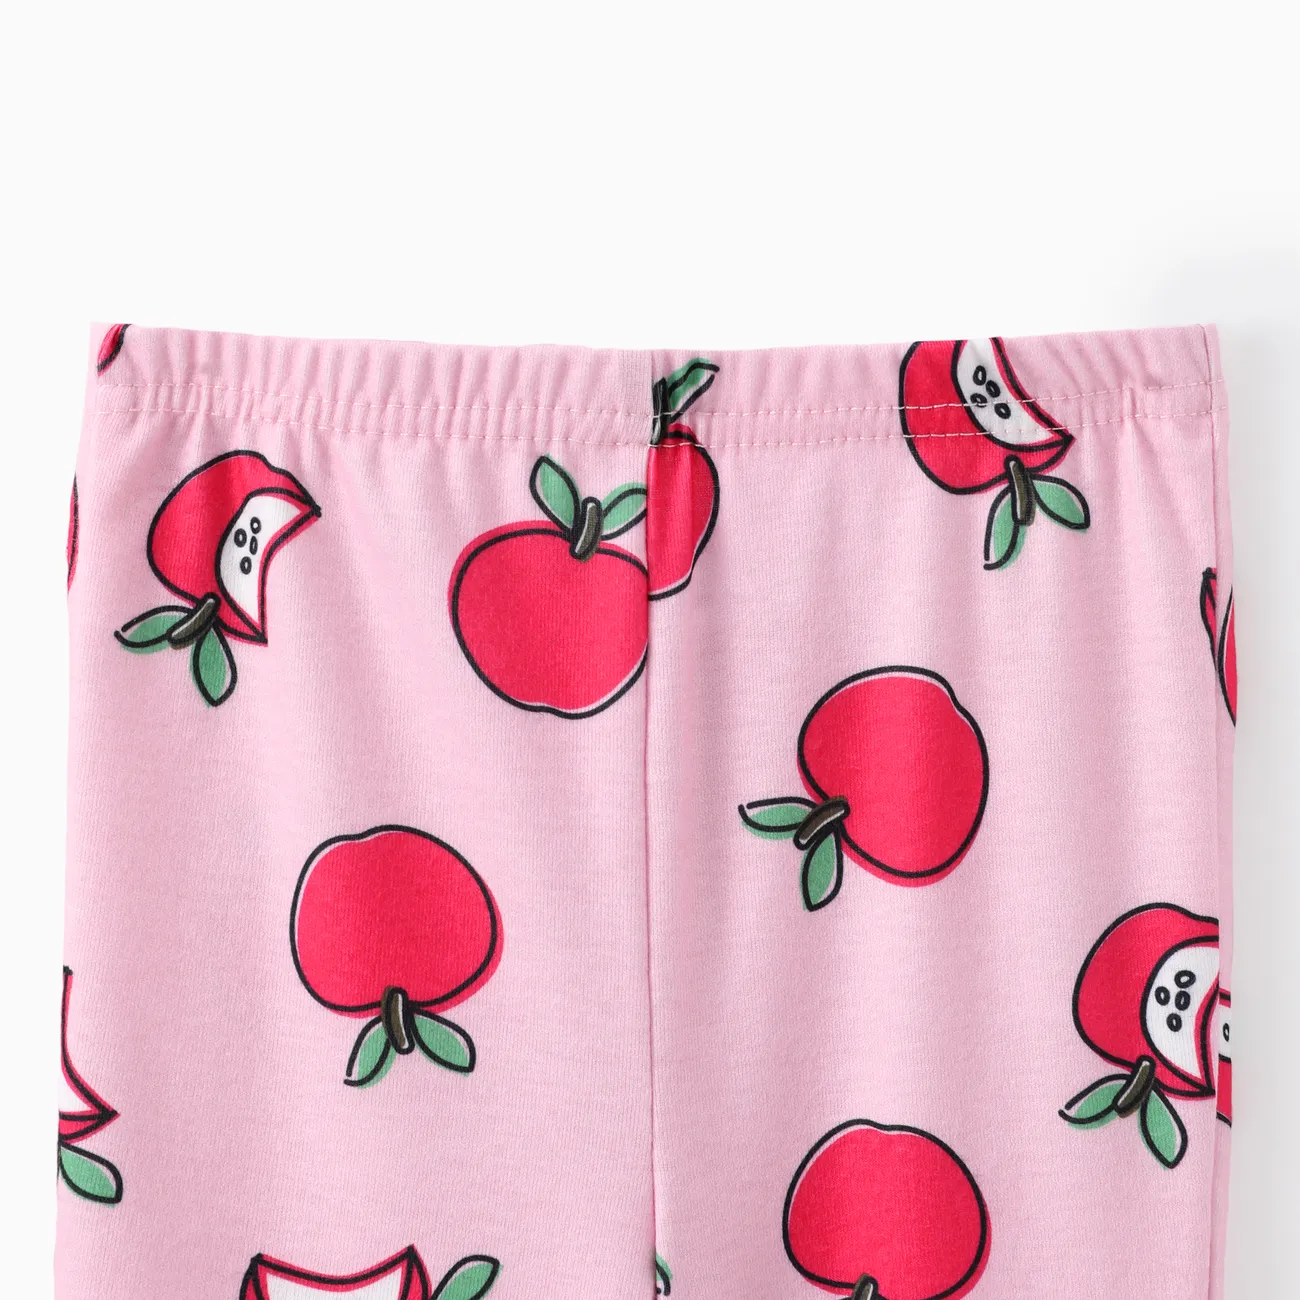 Obst und Gemüse Kleinkind enge Schlafanzüge 2er Set für Mädchen, Polyester-Spandex Mischung. Wassermelonenrot big image 1